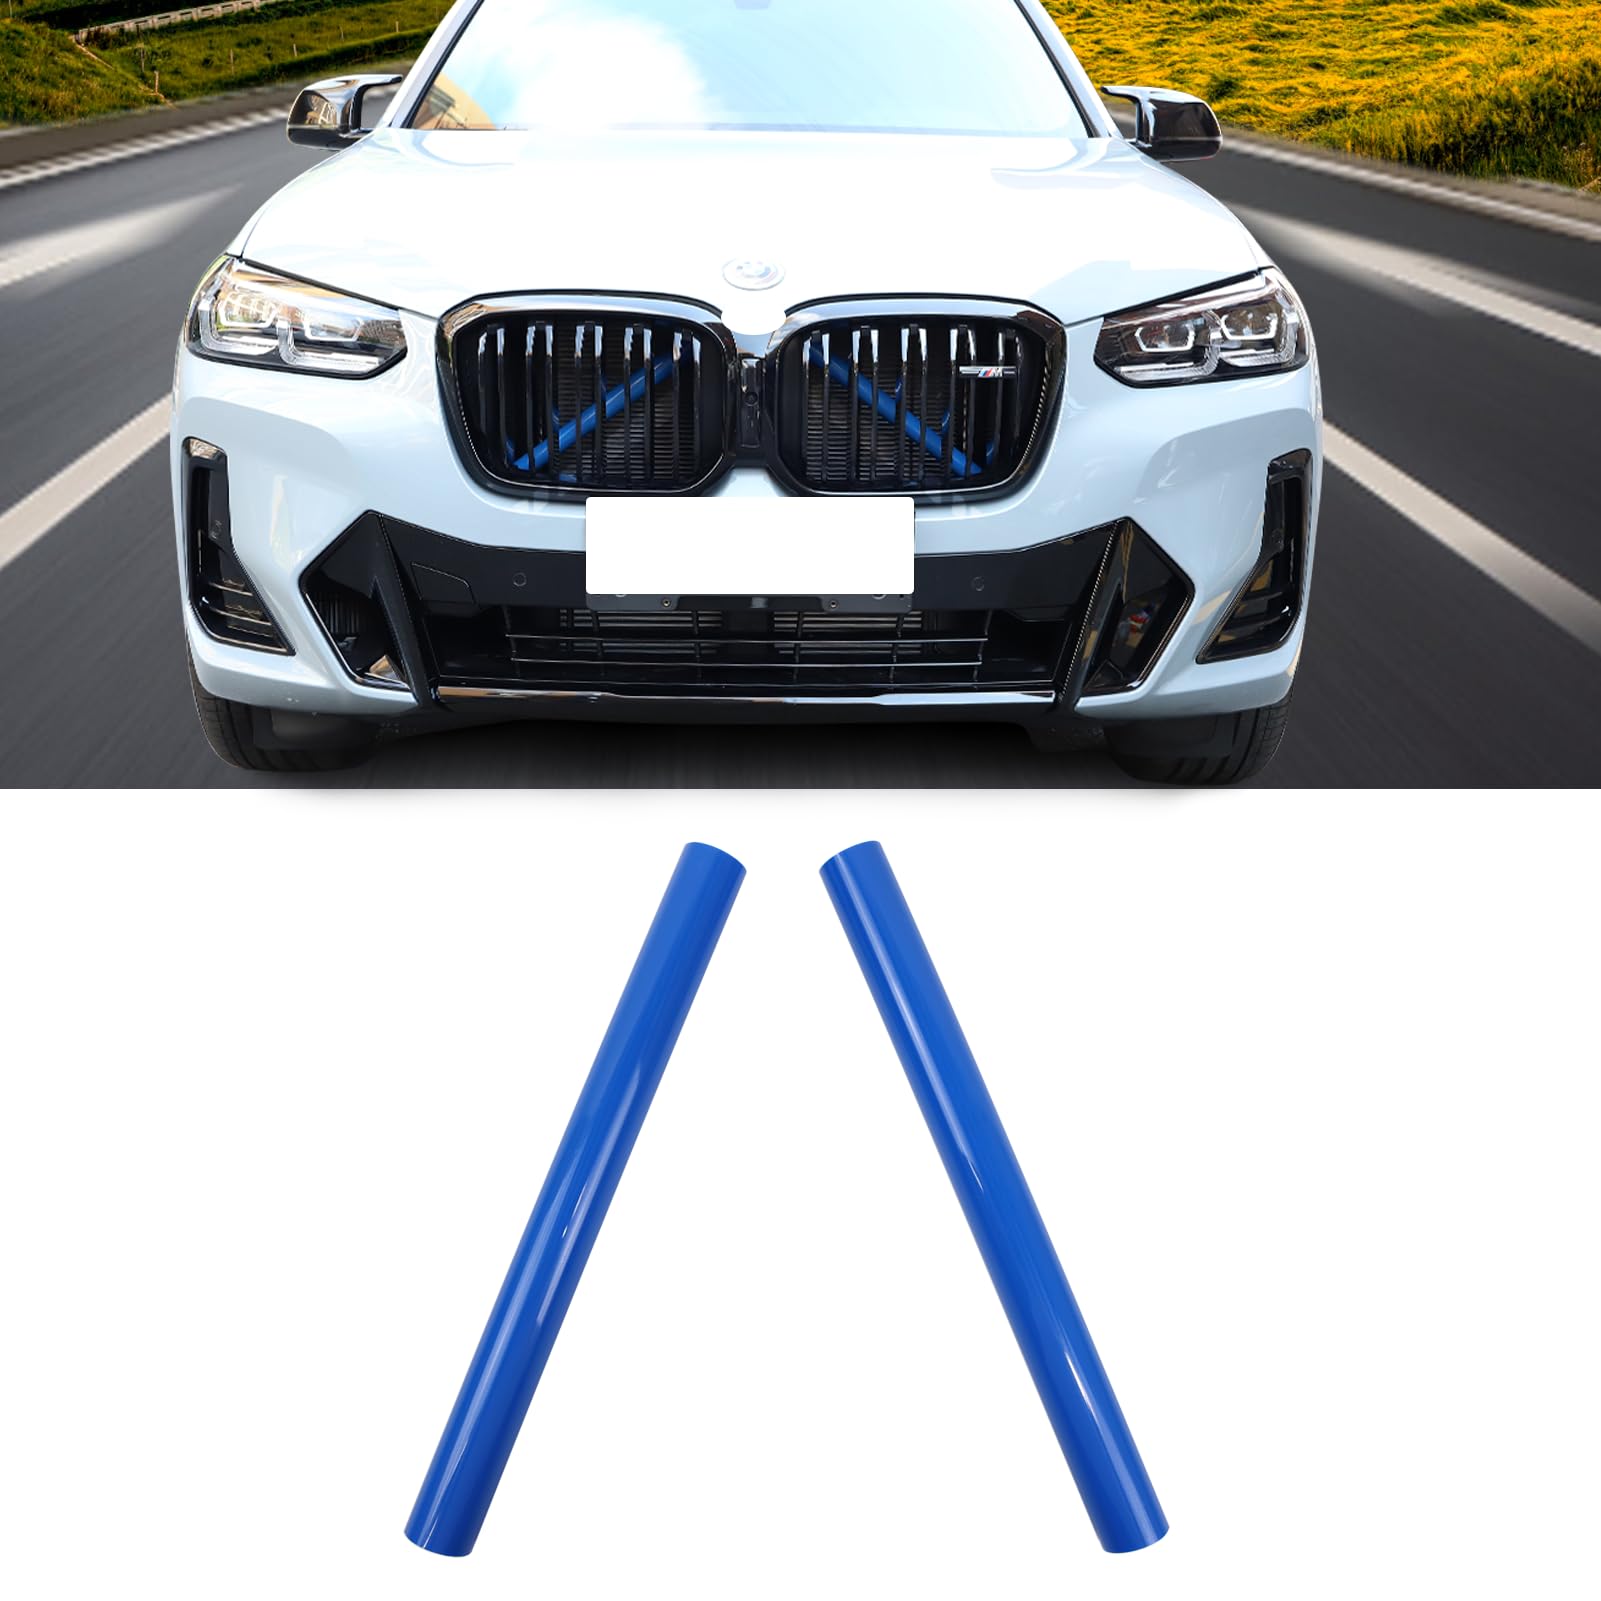 X3 G01 Kühlergrill Einsatz Streifen Zierleiste,für BMW X3 G01 F25 X4 G02 F26 X5 G05 F15 E70 X6 G06 F16 E71 X7 G07,V-Brace Wrap Covers Blau Grill Streifen Frontgrill Einsatz Streifen (Blau) von SHSBSCAR